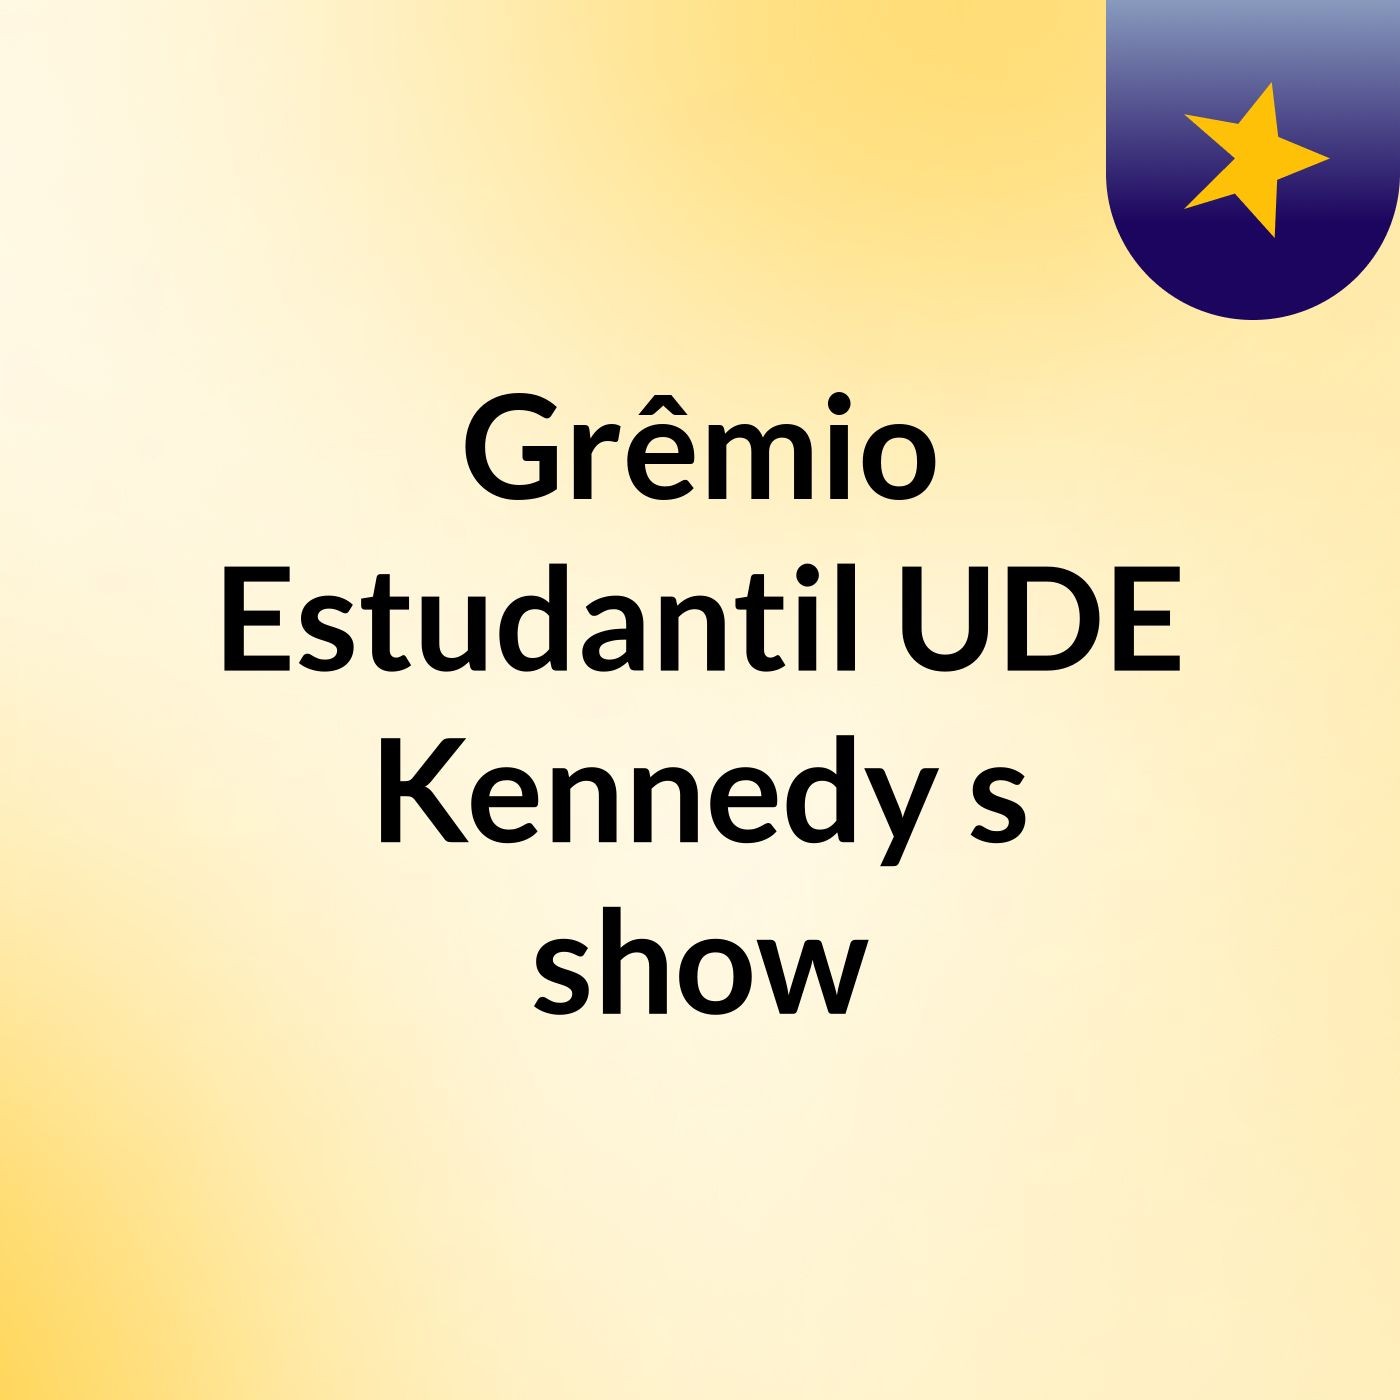 Grêmio Estudantil UDE Kennedy's show